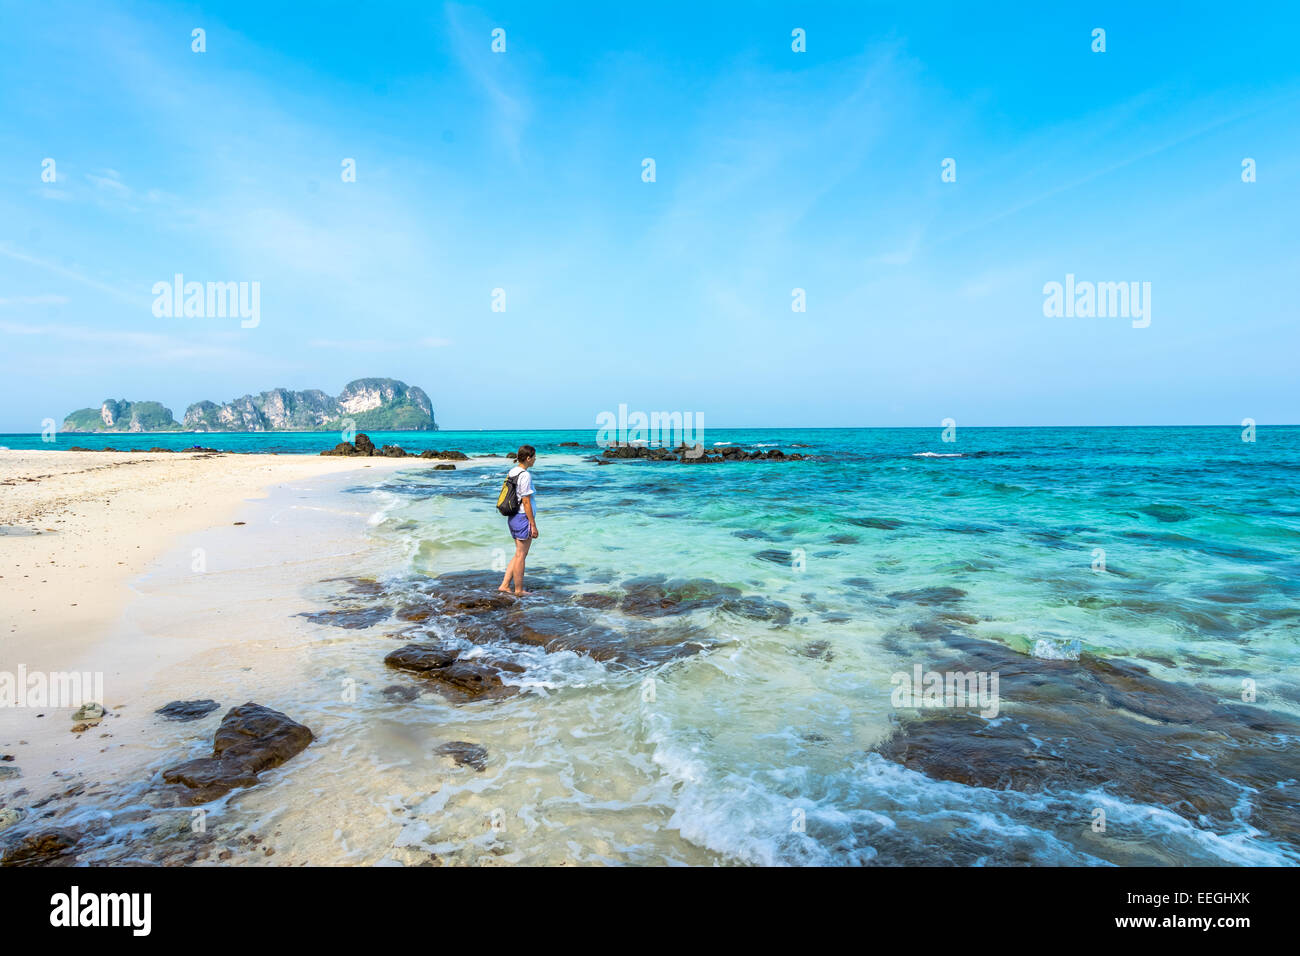 Touristen am Strand in Thailand, Asien. Bamboo Island in Thailand-blauen Himmel und mit seidig weichen, weißen Sand und außergewöhnlich cl Stockfoto